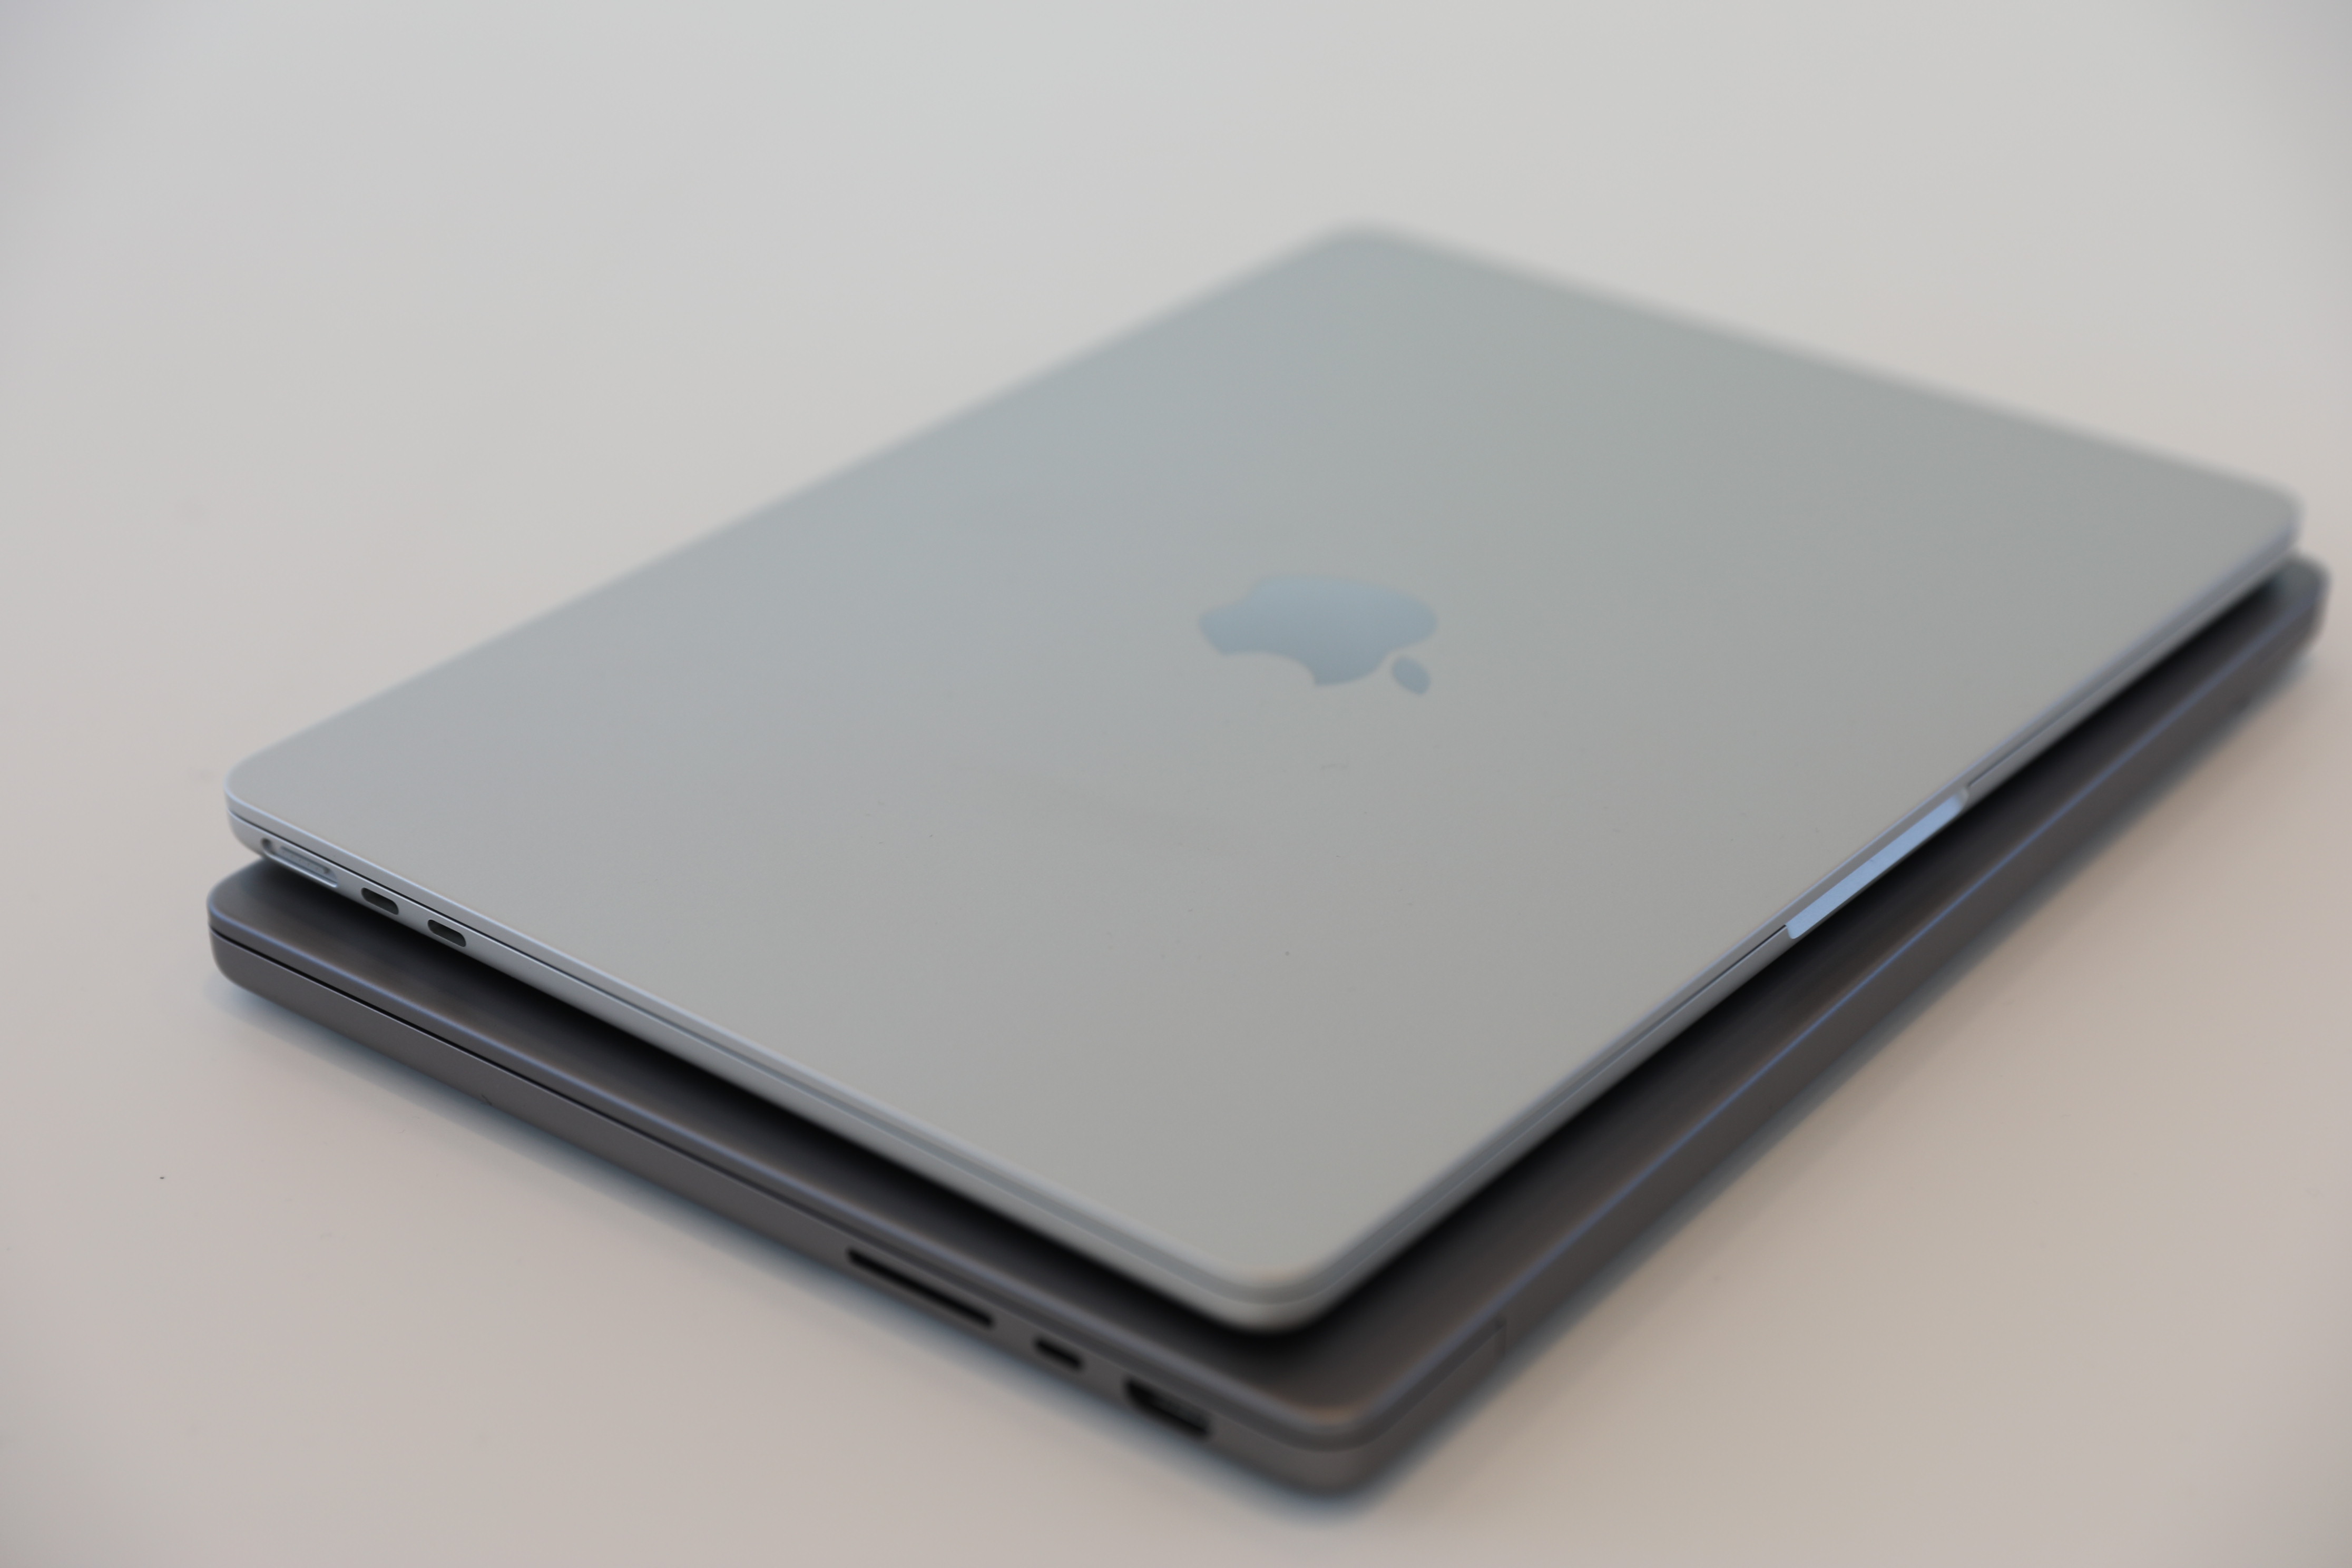 CMC 1357 - Apple Macbook Air M2 (2022) price in Nigeria and full specs